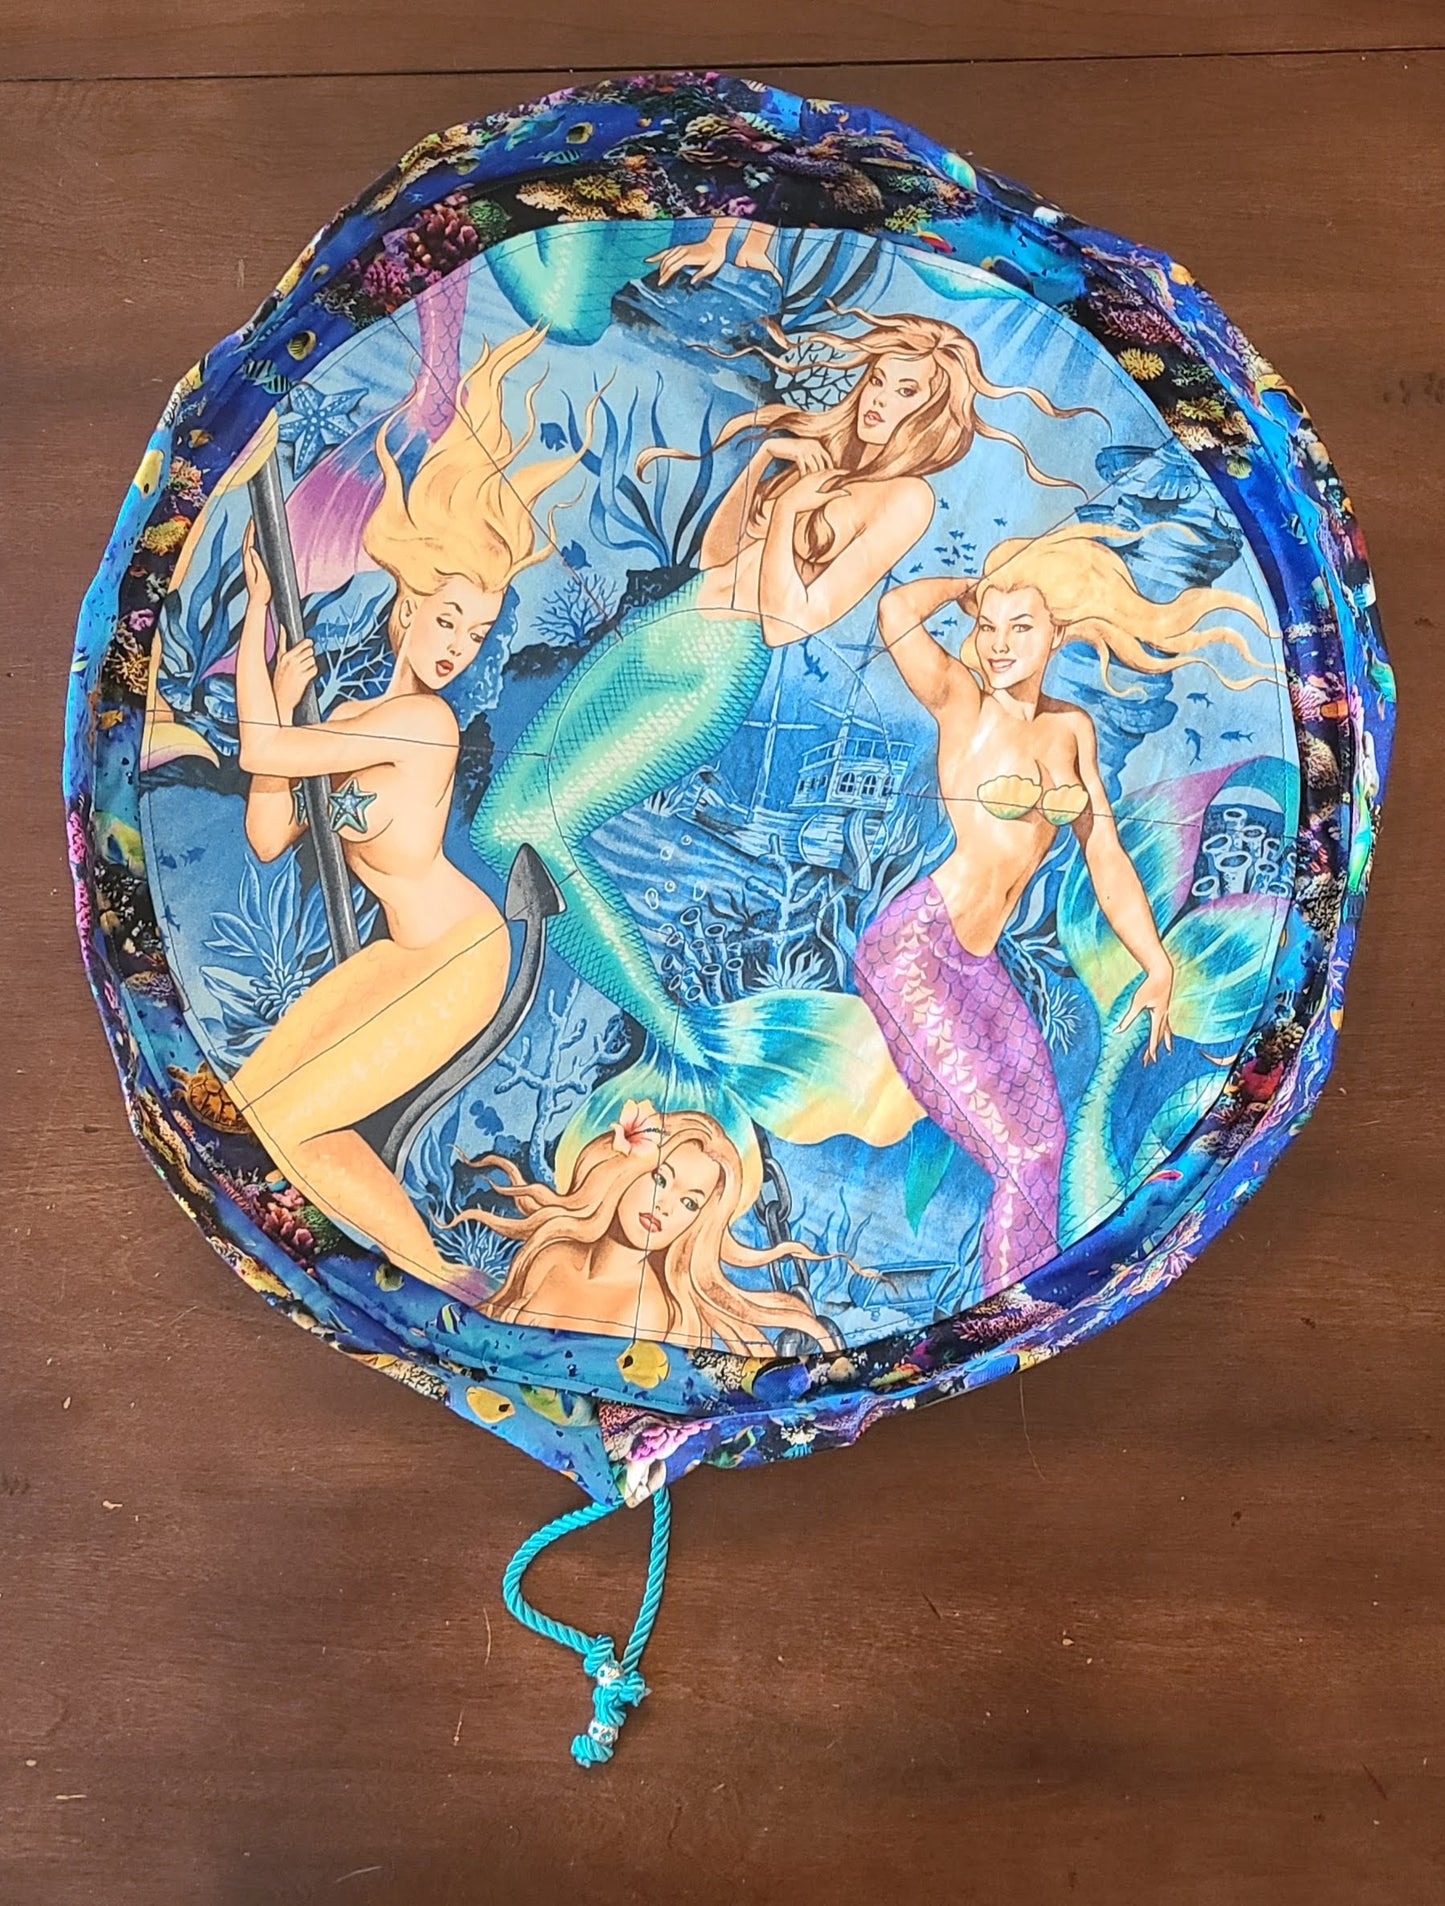 Mermaids Bag of Holding